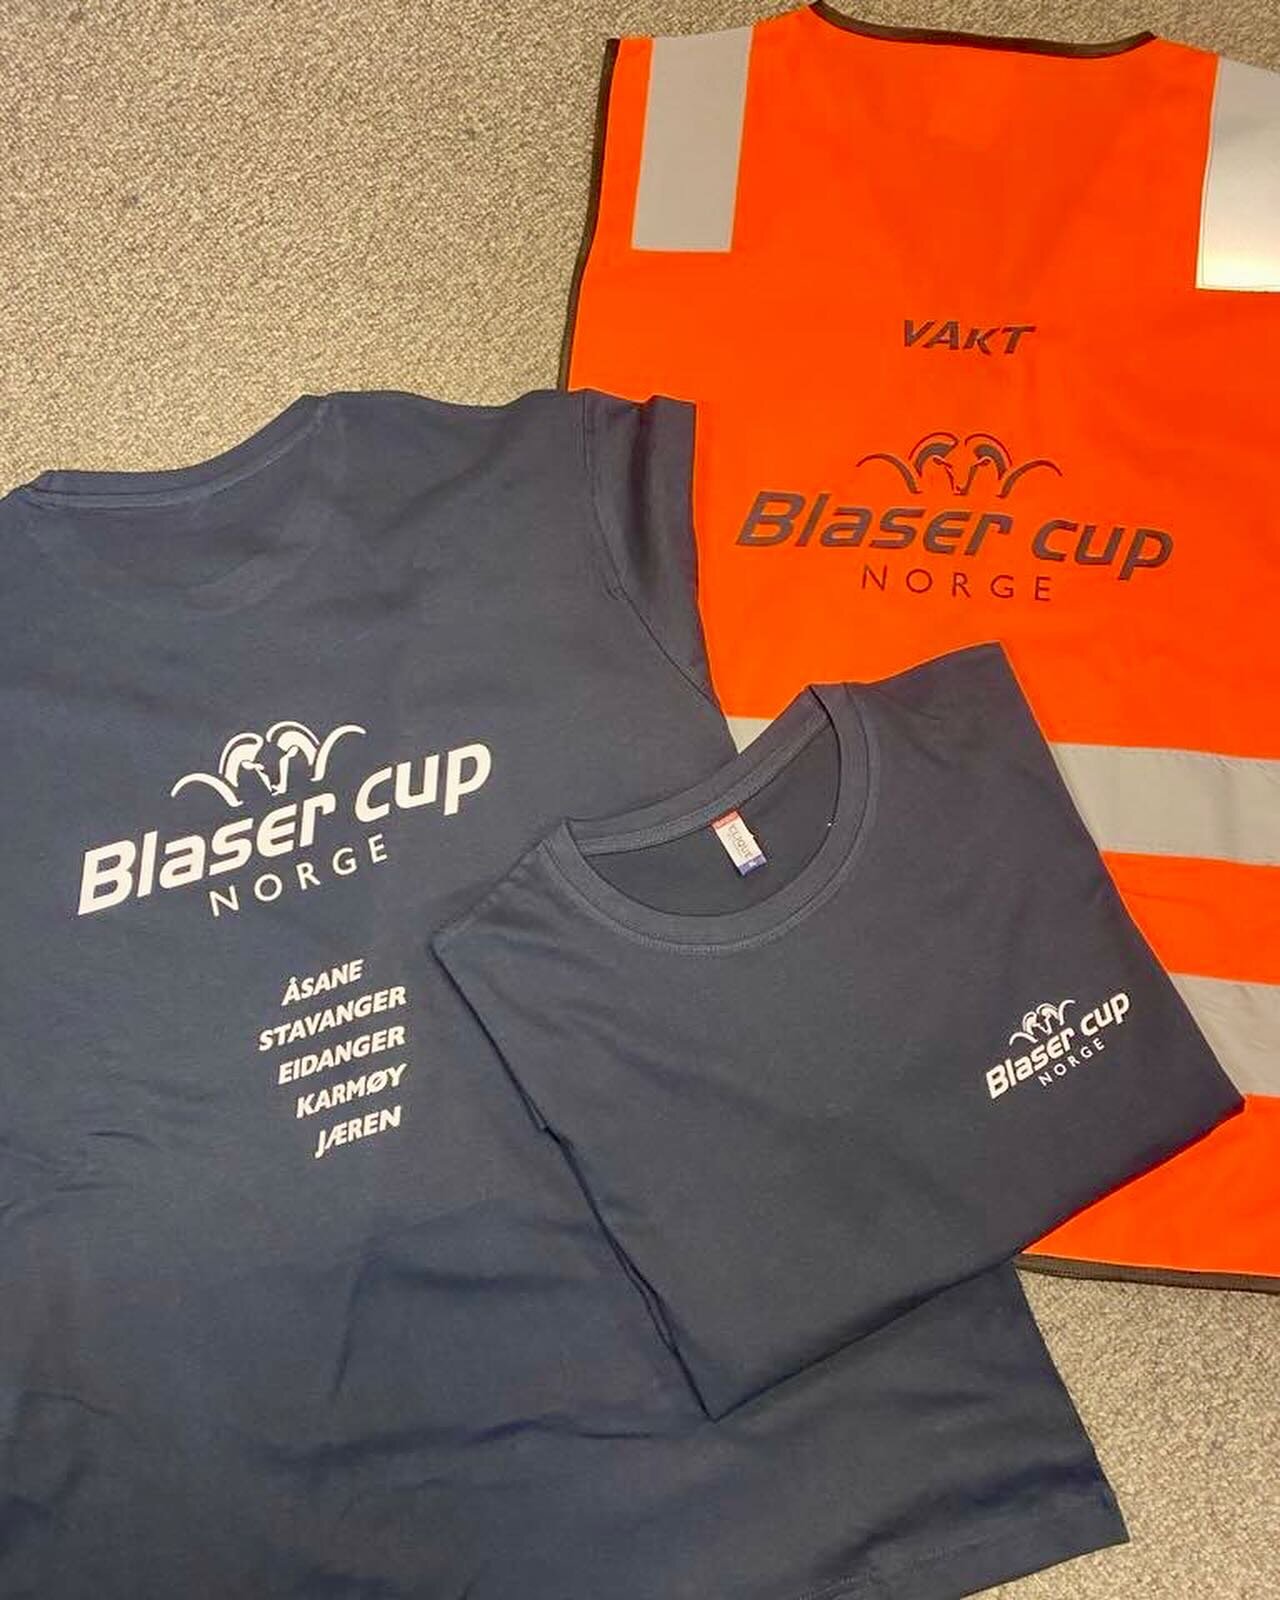 T-skjorter, refleksvester og capser til Blaser cup i produksjon 🤩👍🏻 

#jprint #blasercup #caps #t-skjorte #refleksvest #cup #konkurranse #trykkeri #handlelokalt